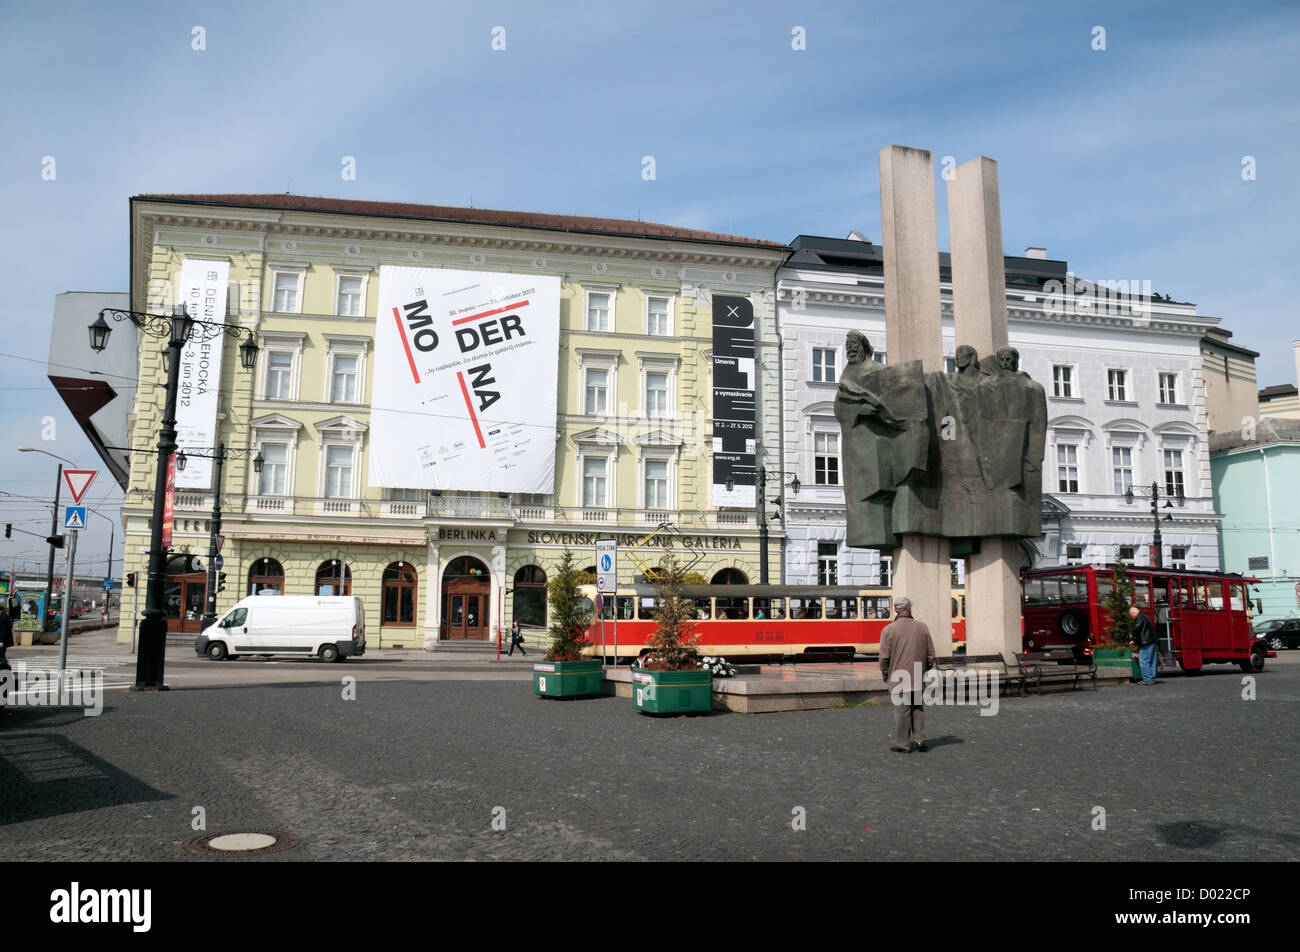 Auch Ľudovíta Štúra (Star-Platz) mit Kriegerdenkmal und der Slowakische Nationale Galerie (SNG) in Bratislava, Slowakei. Stockfoto